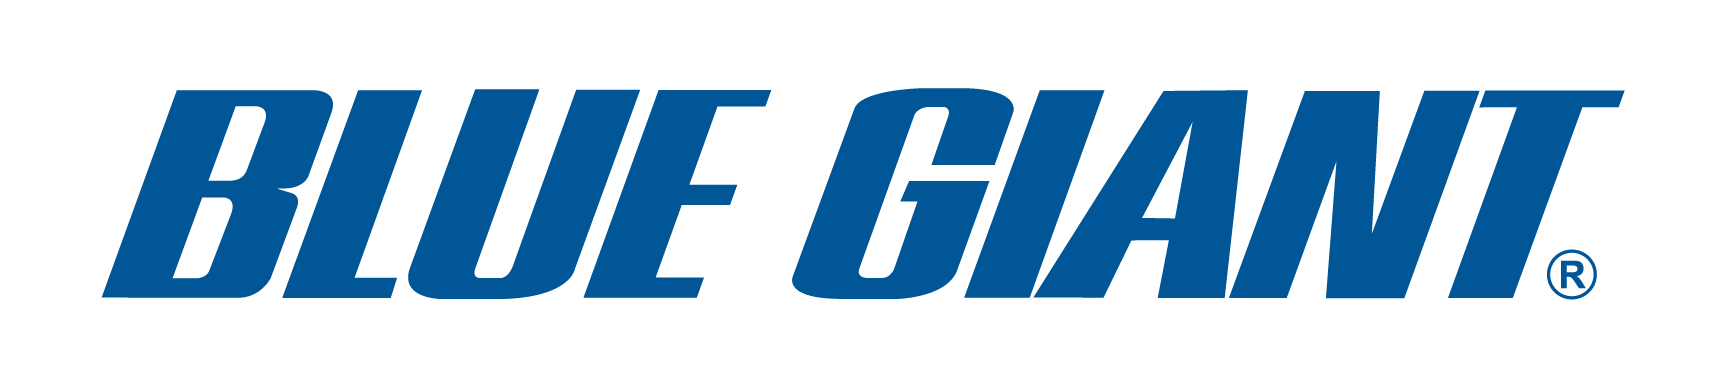 Customer - Blue Giant Logo